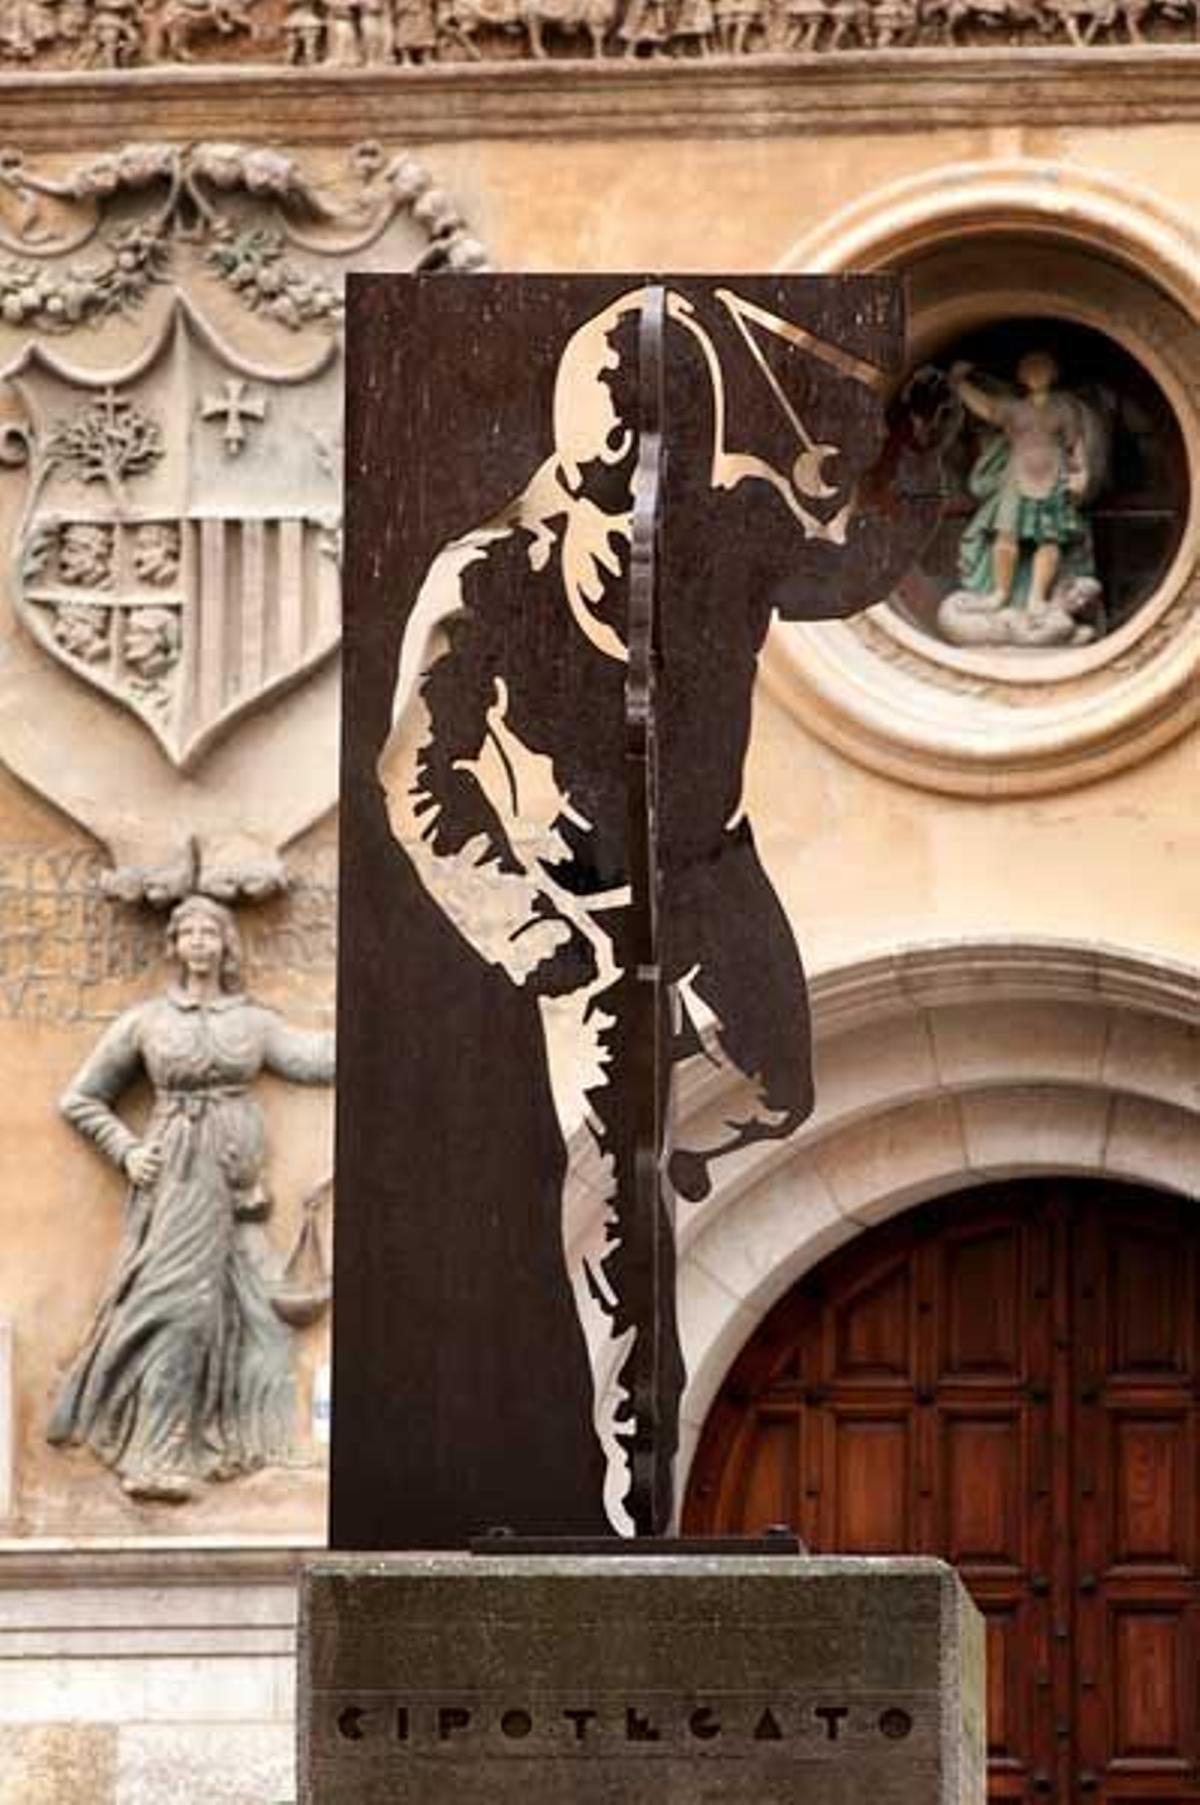 Una escultura, frente al Ayuntamiento de Tarazona,  recuerda la fiesta del Cipotegato